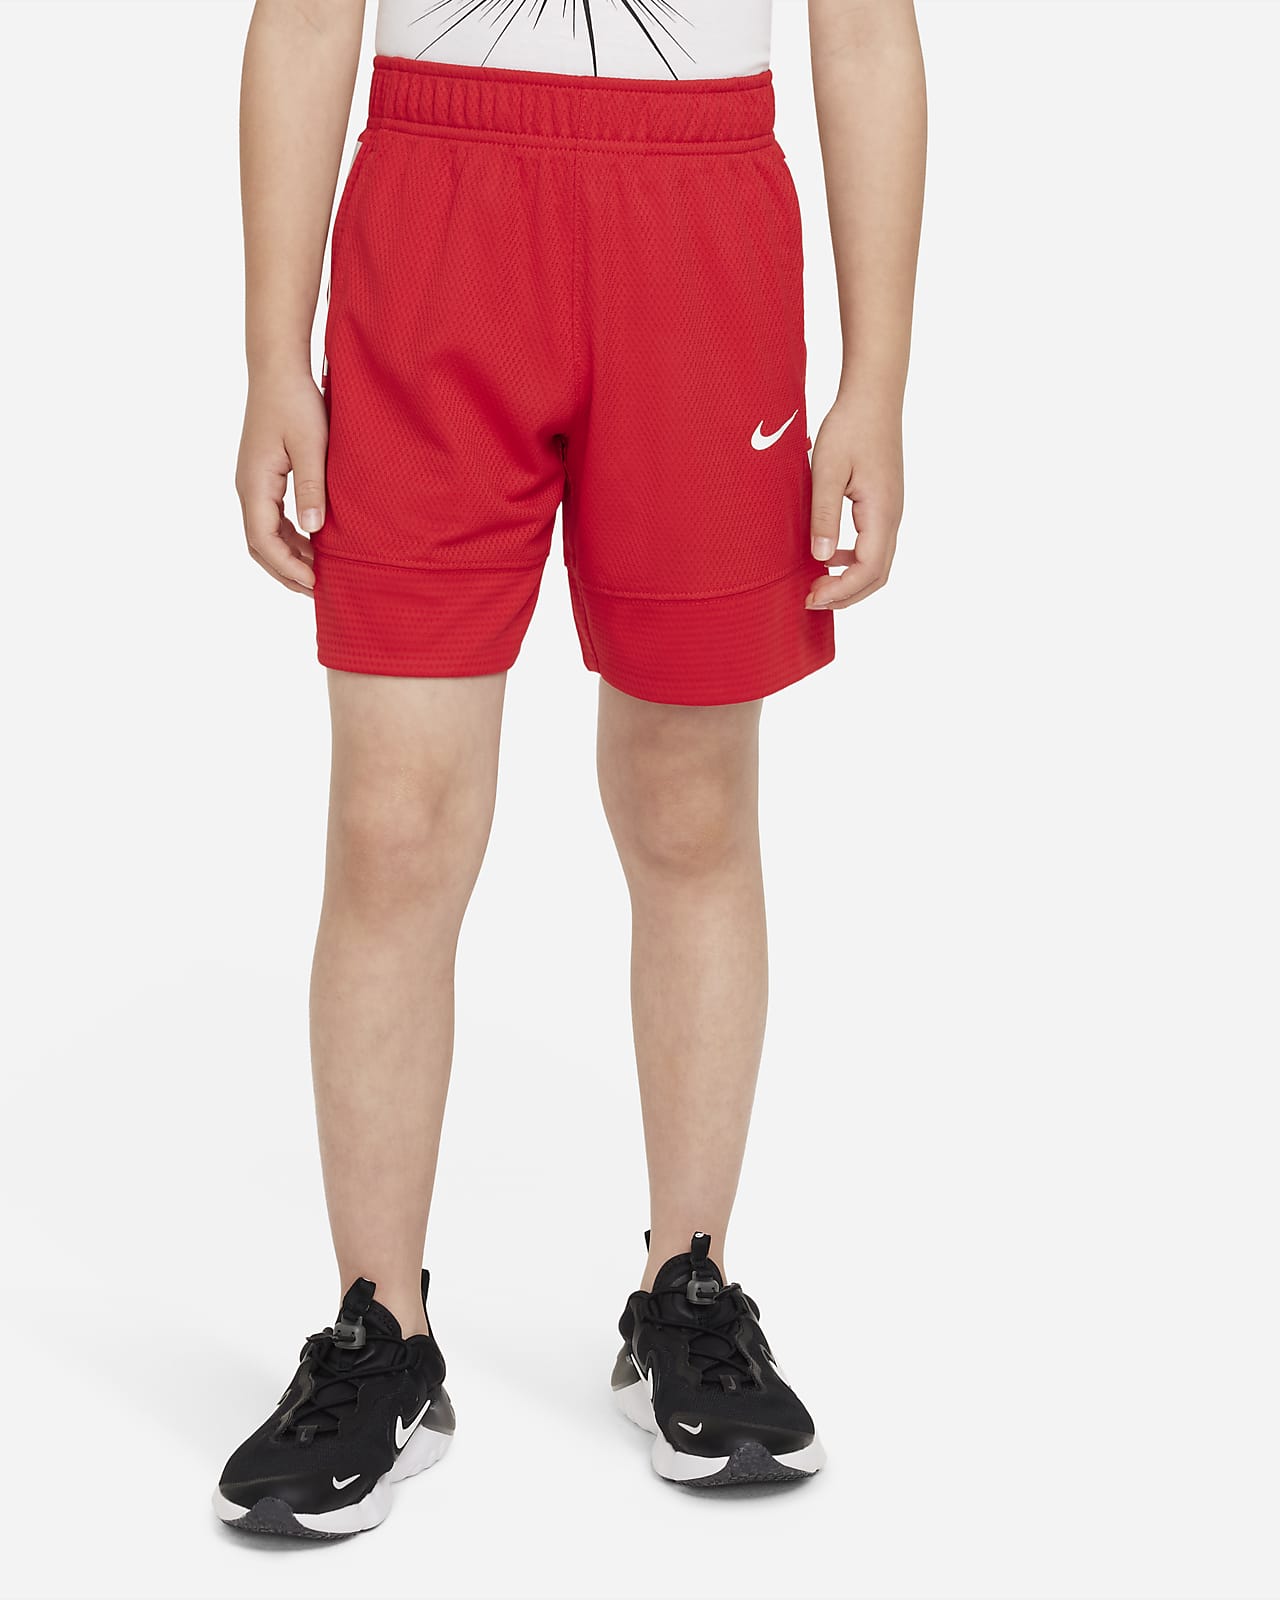 Nike Dri-FIT Elite Little Kids' Shorts